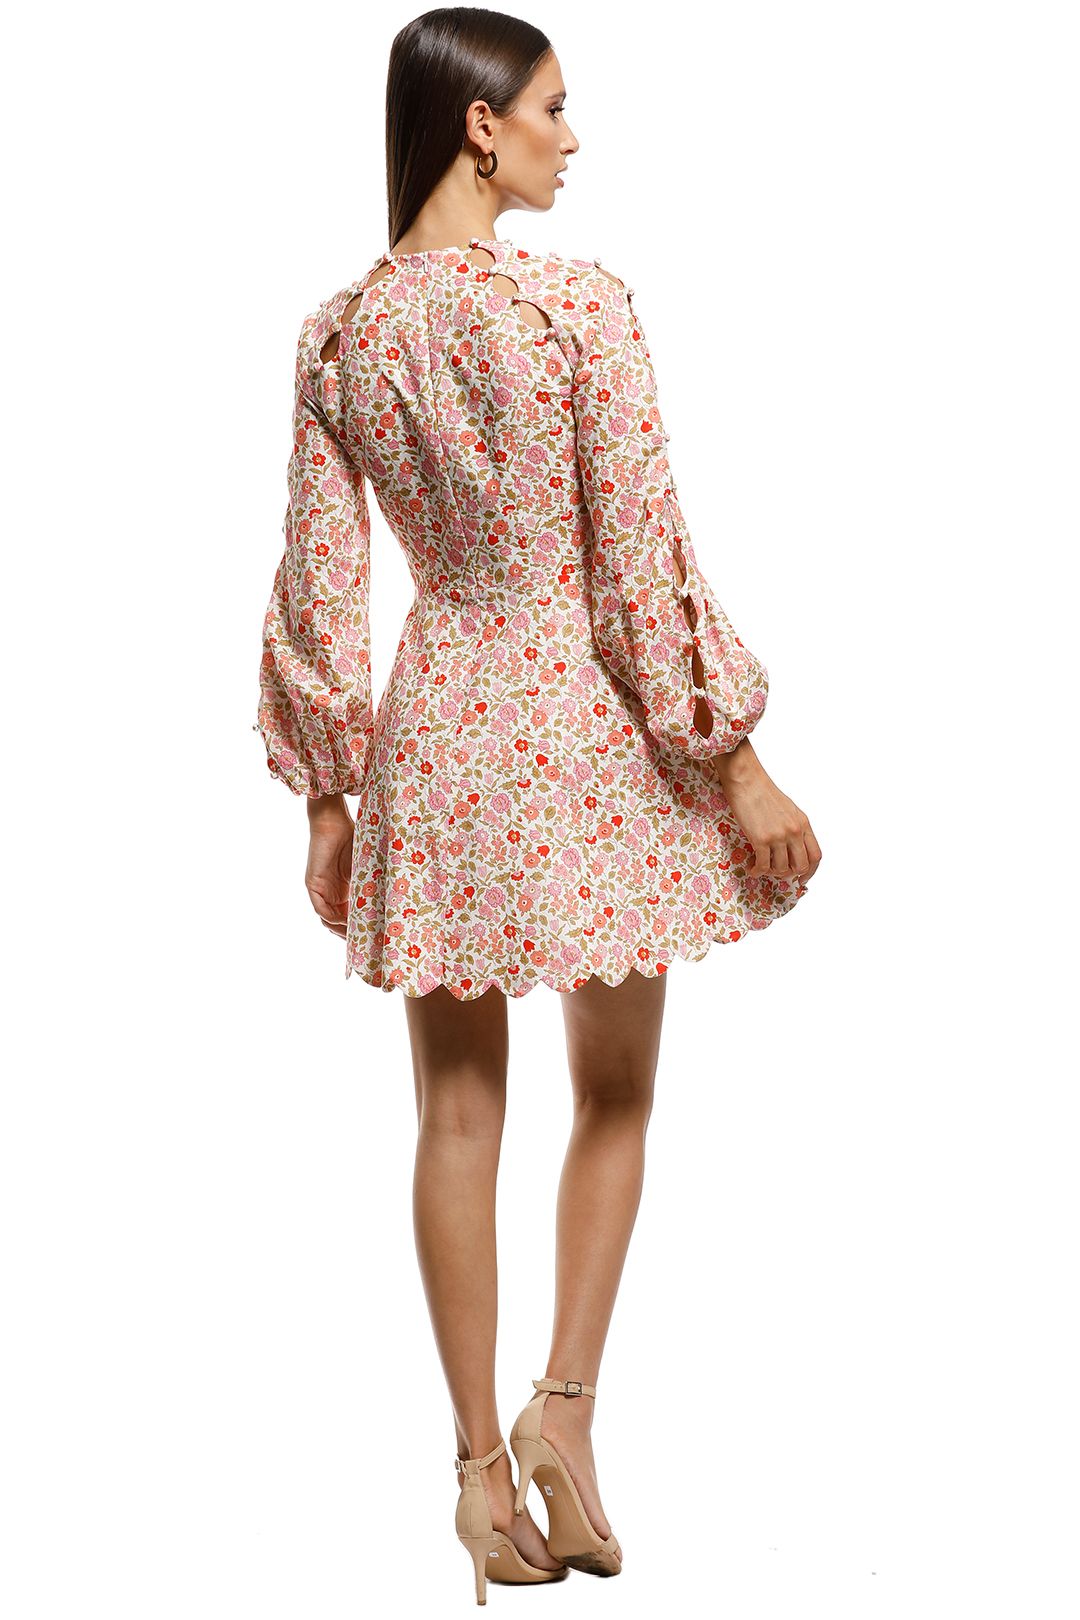 Zimmermann - Goldie Scallop Short Dress - Pink - Back